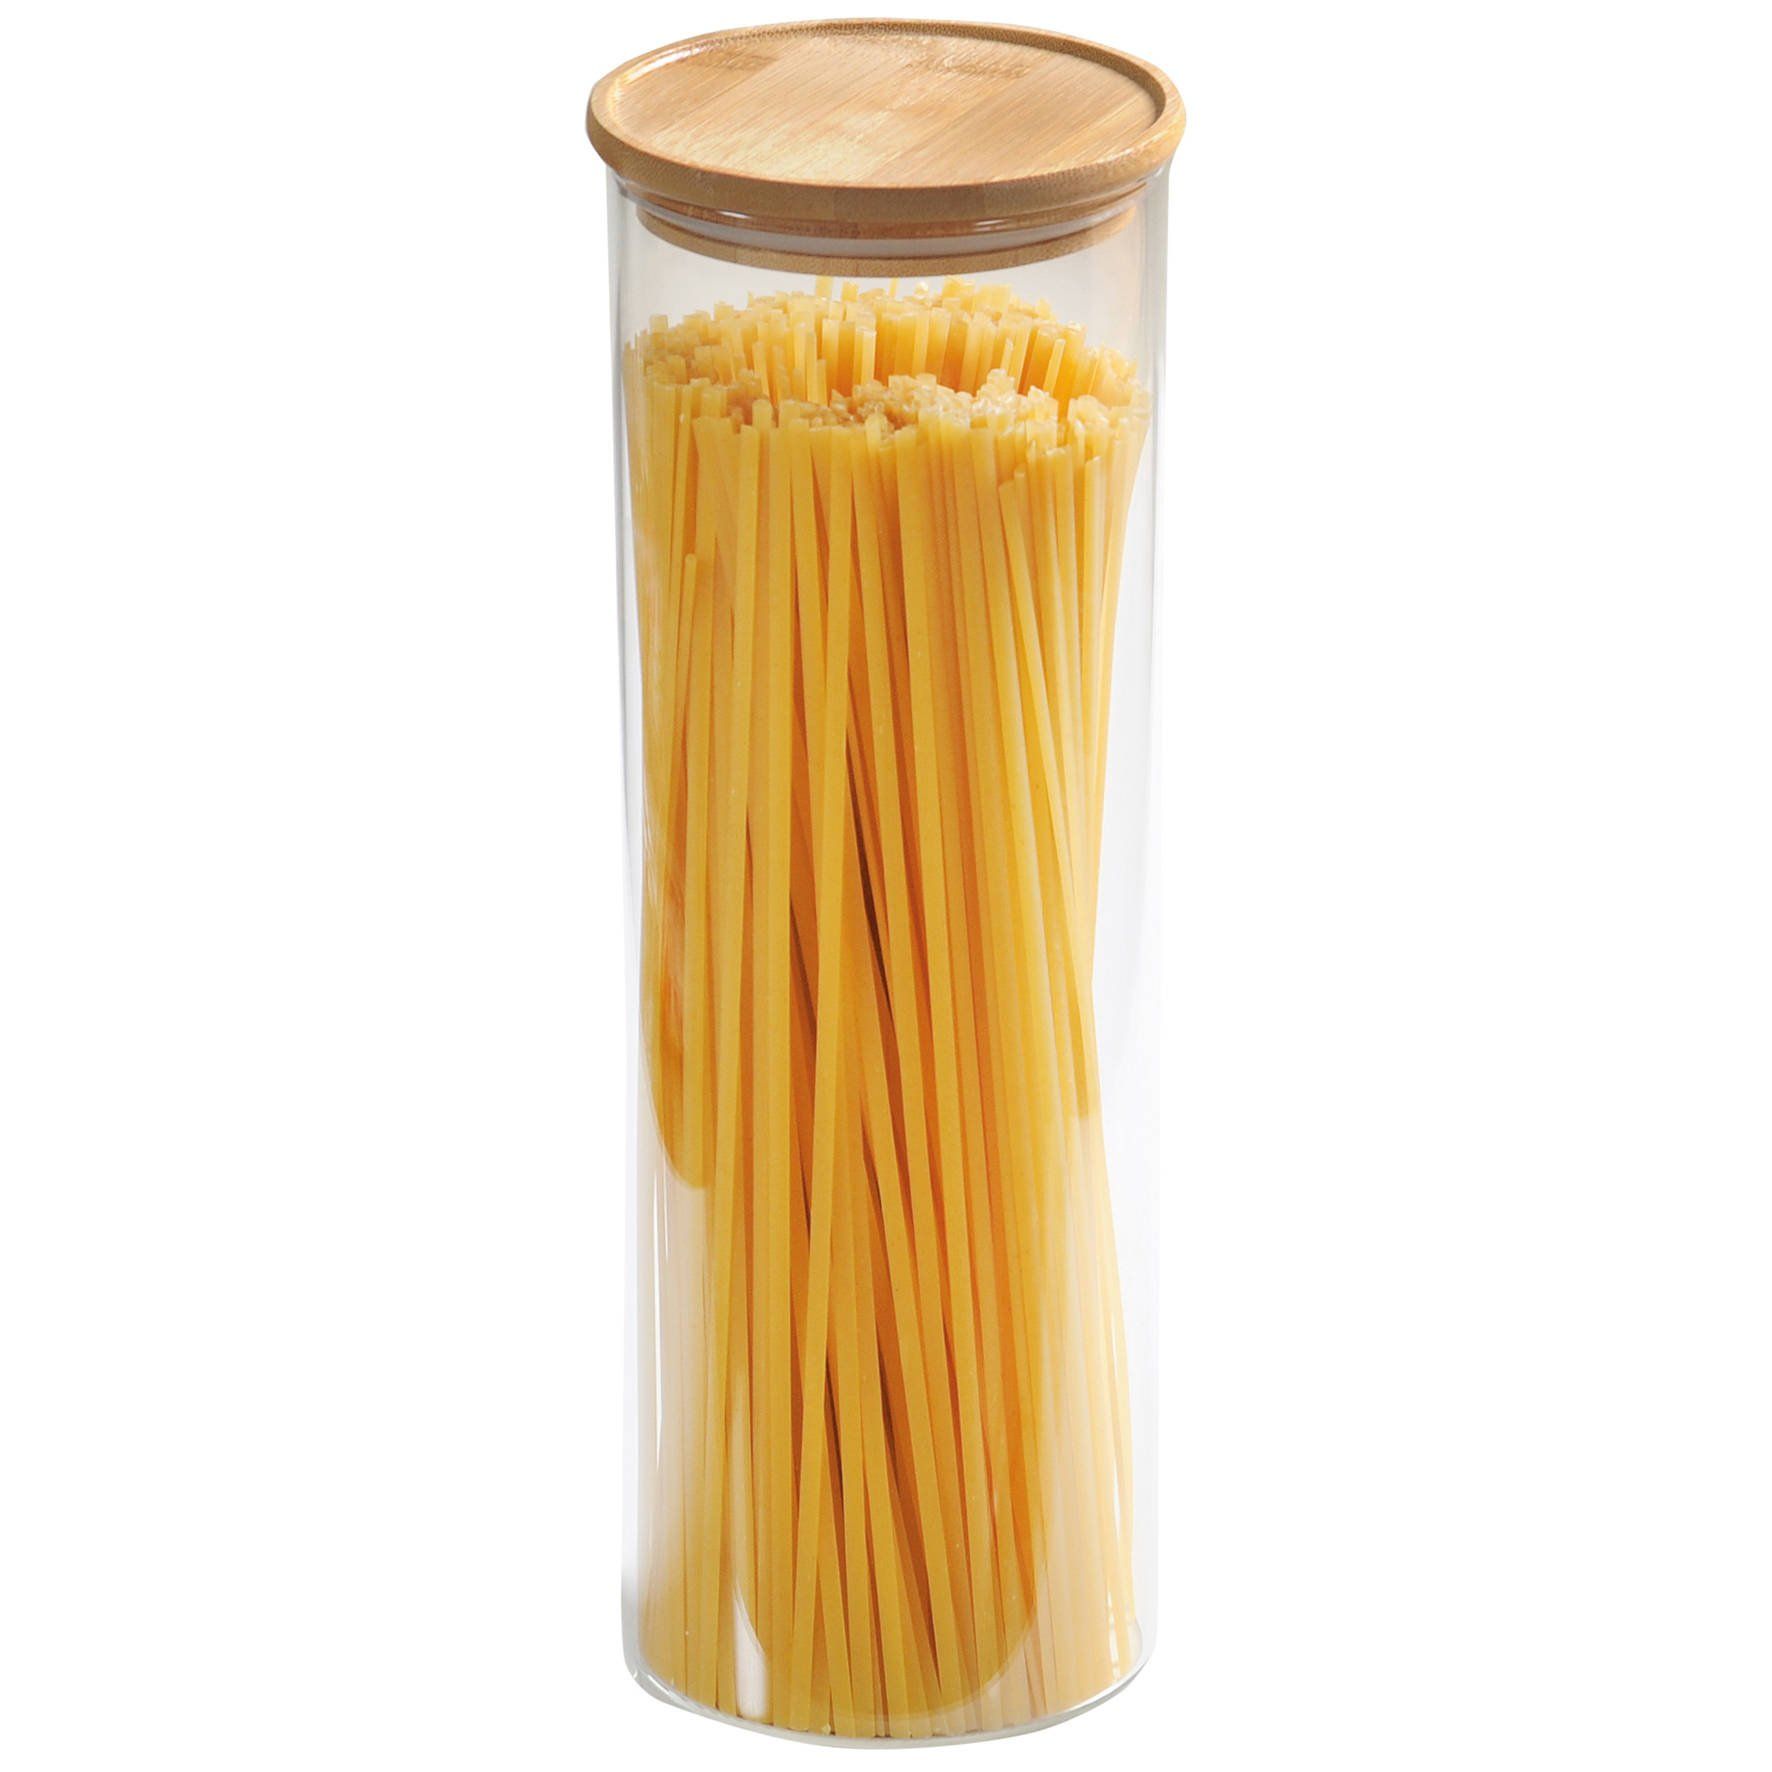 Dóza na špagety, 1,8 l, sklo, KESPER - EMAKO.CZ s.r.o.